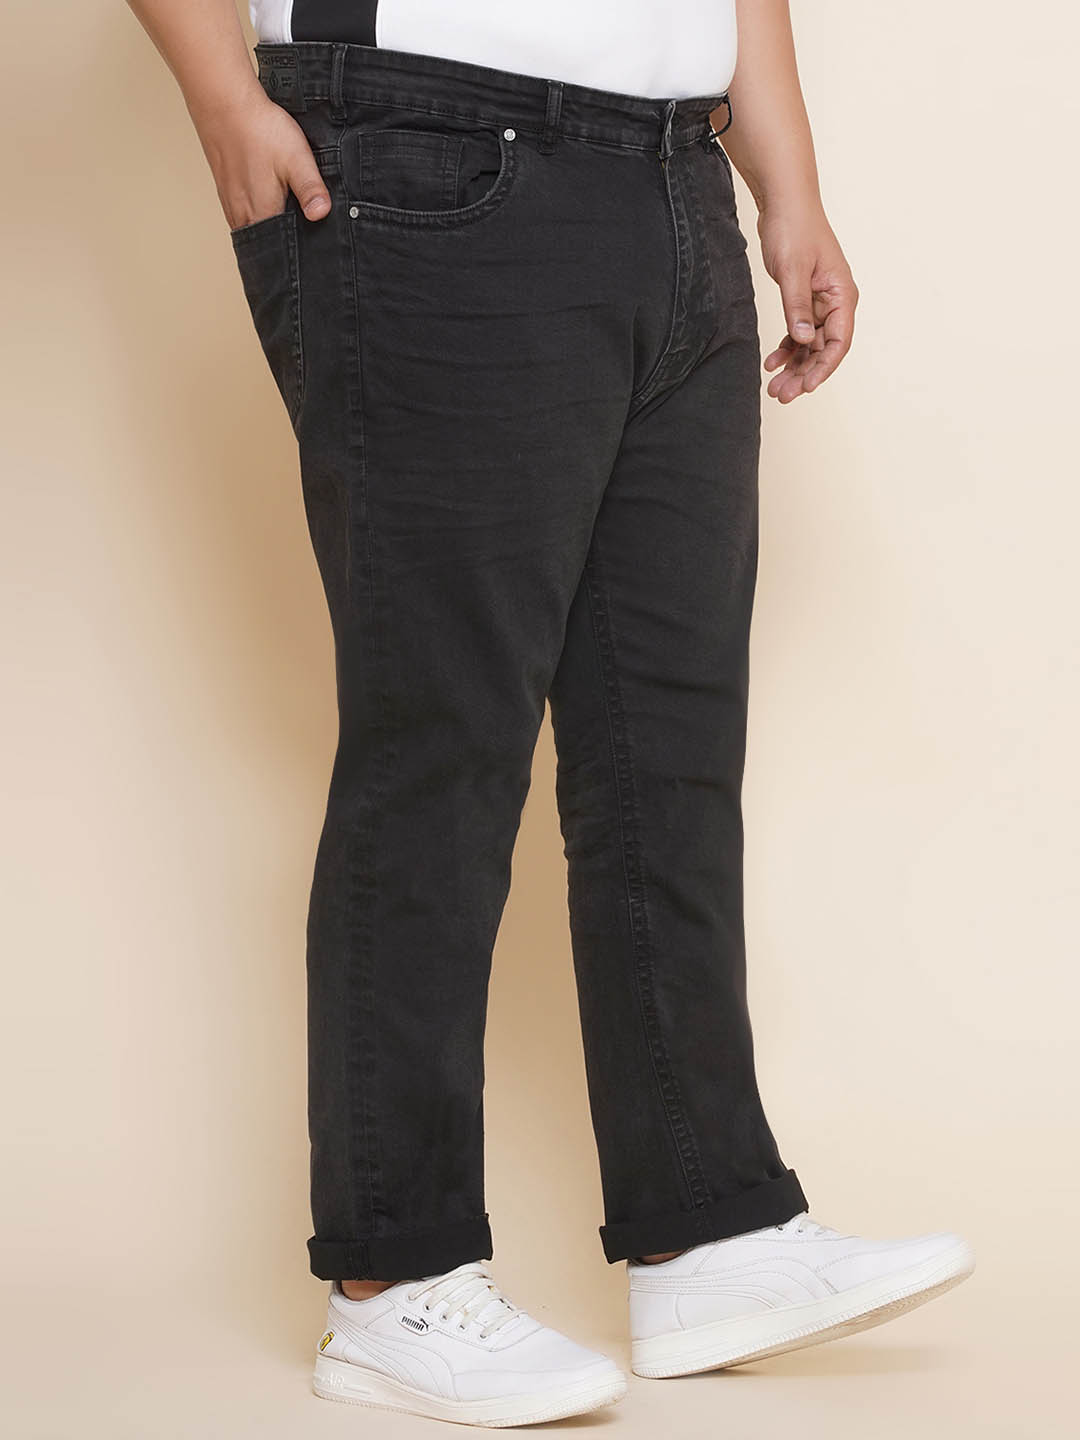 bottomwear/jeans/JPJ27066/jpj27066-4.jpg